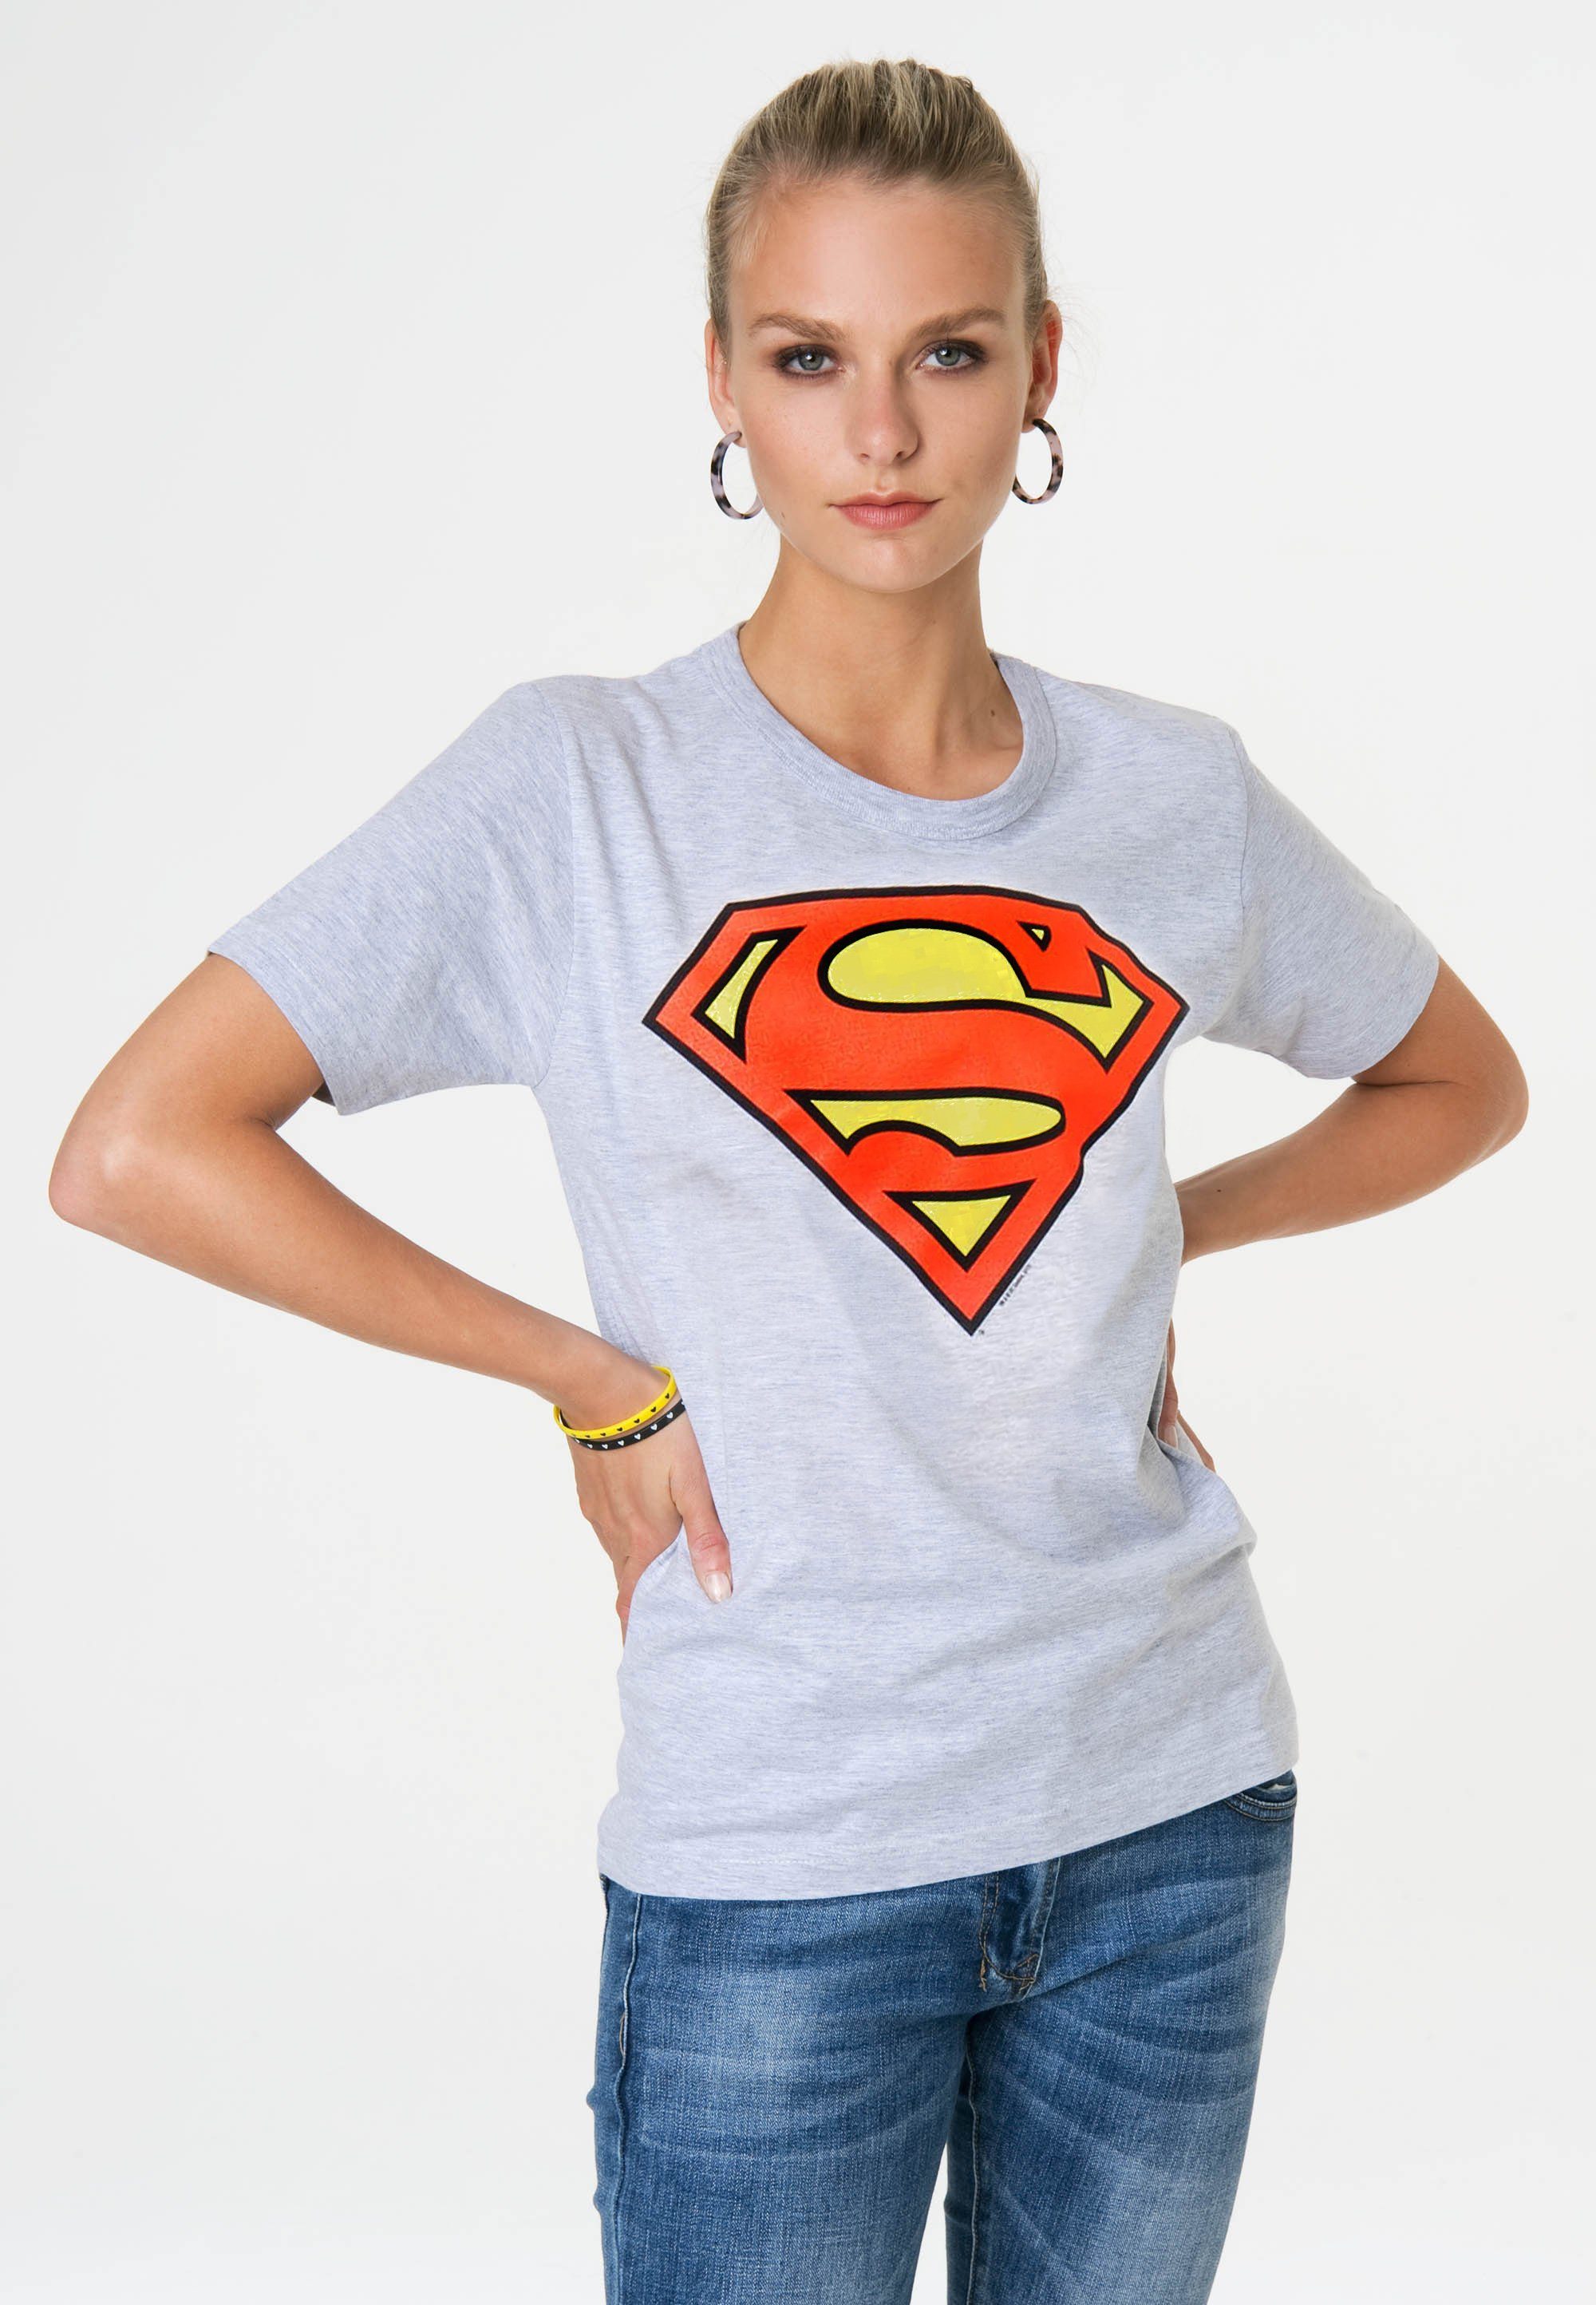 T-Shirt Superman Superhelden-Print Logo LOGOSHIRT grau-meliert trendigem mit